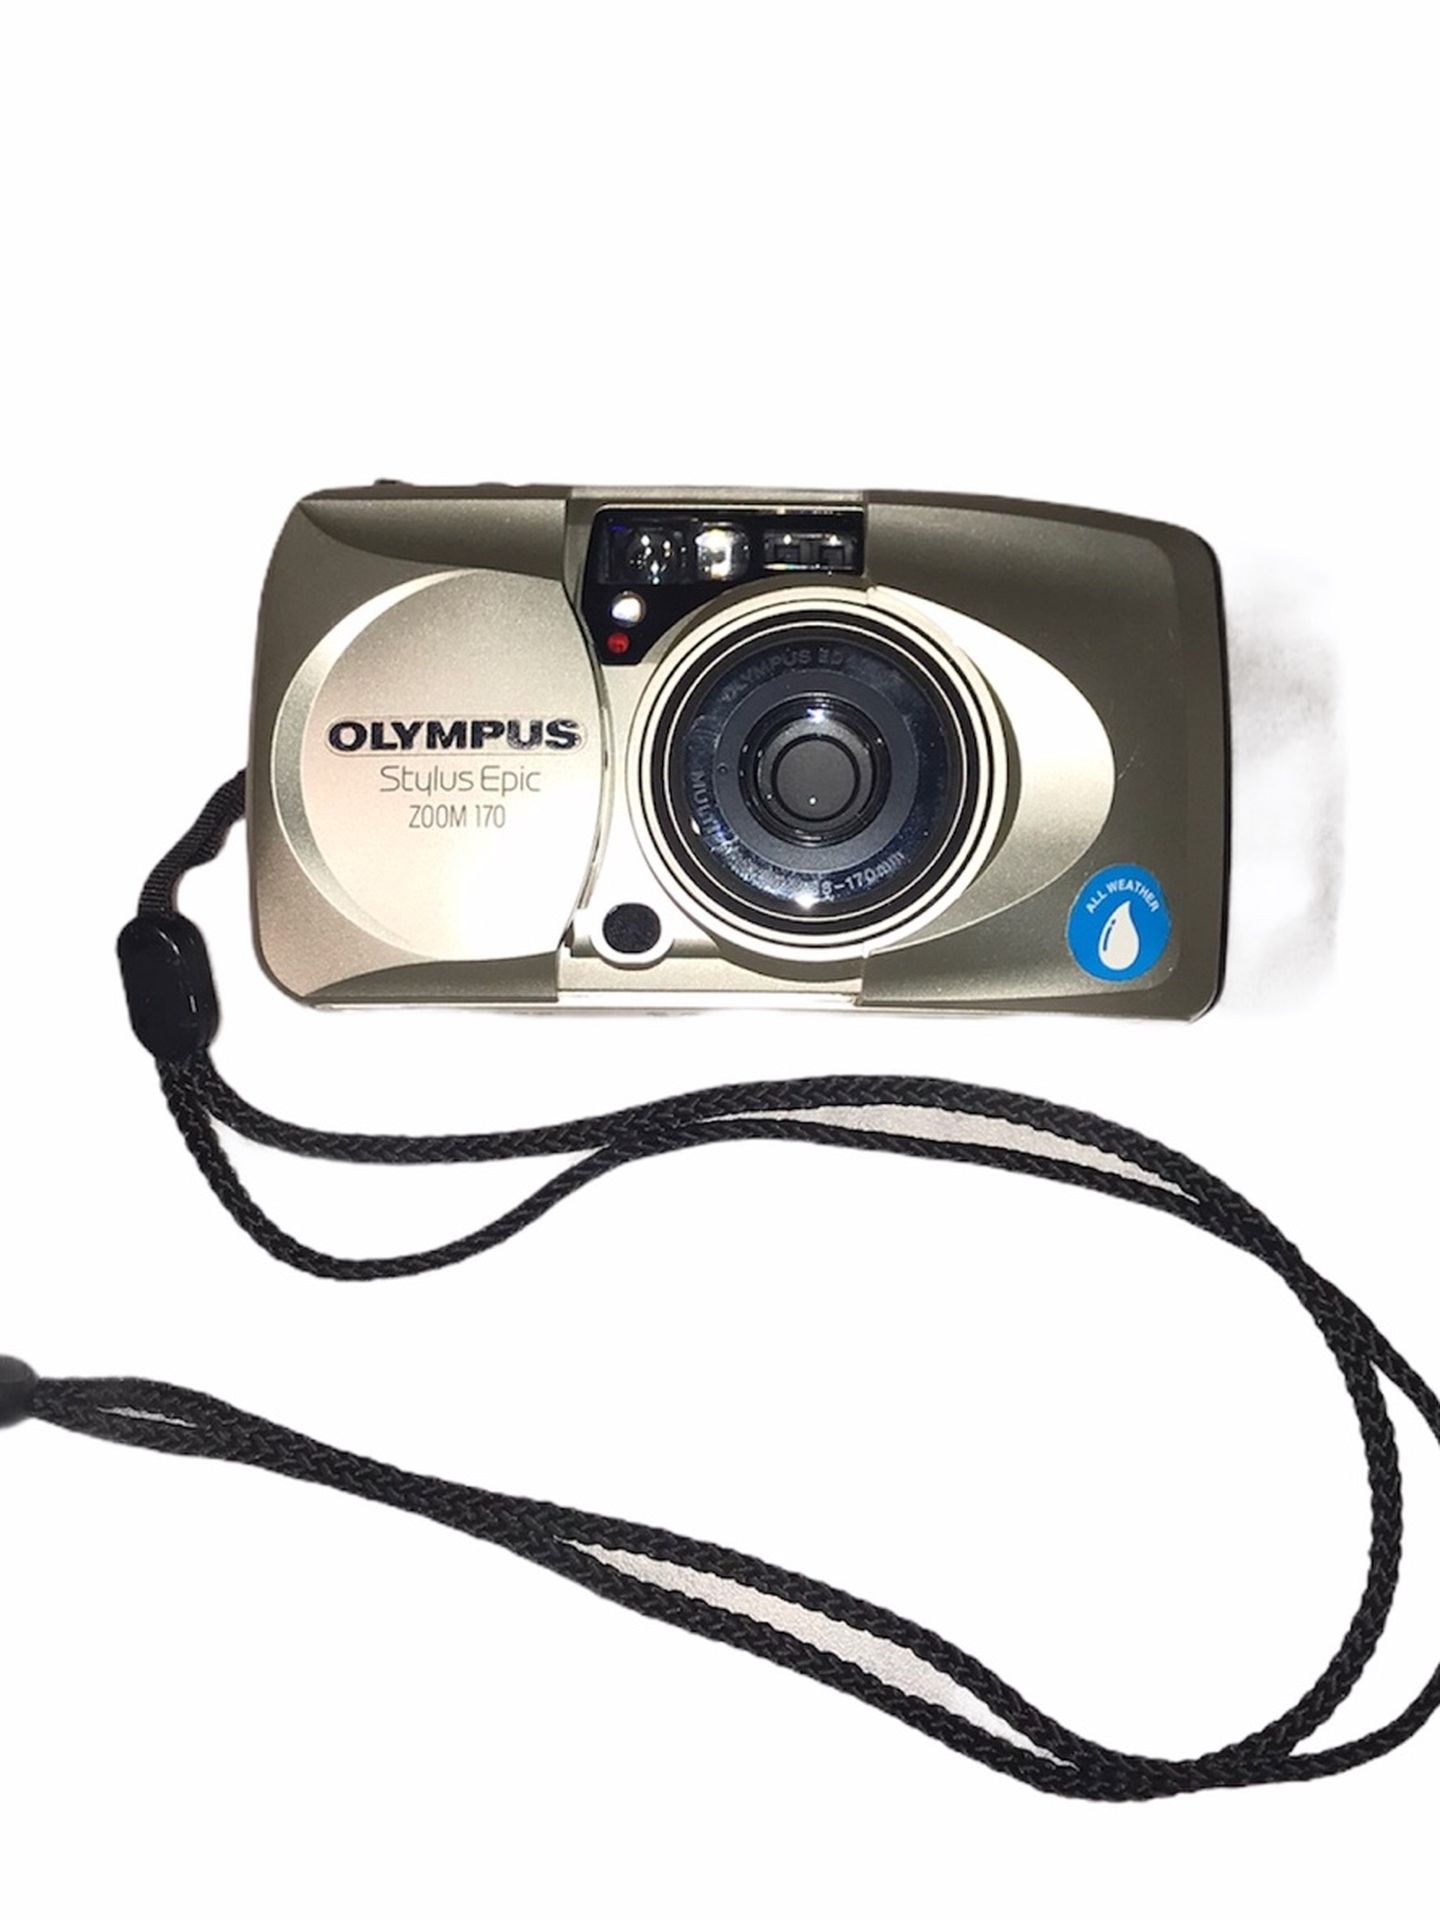 Vintage 35mm Olympus Stylus Epic Zoom 170